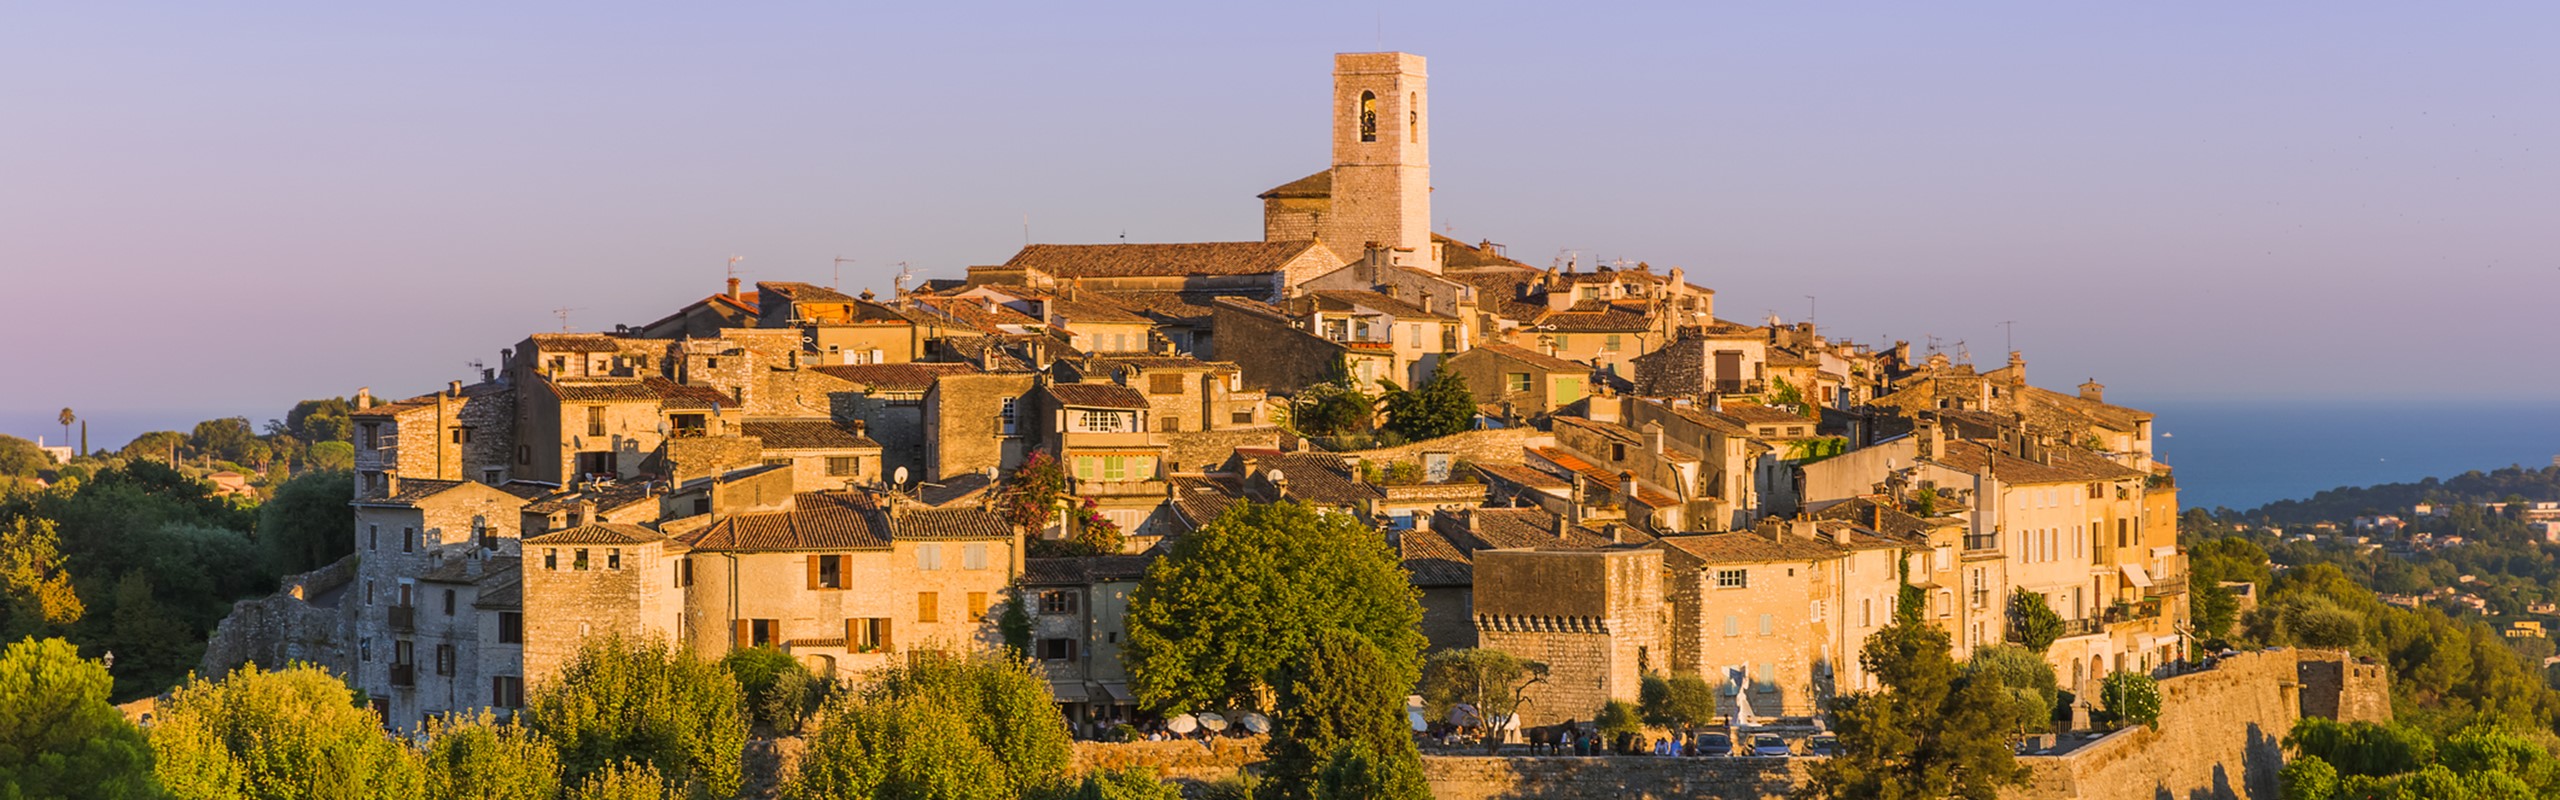 Côte d'Azur Villages